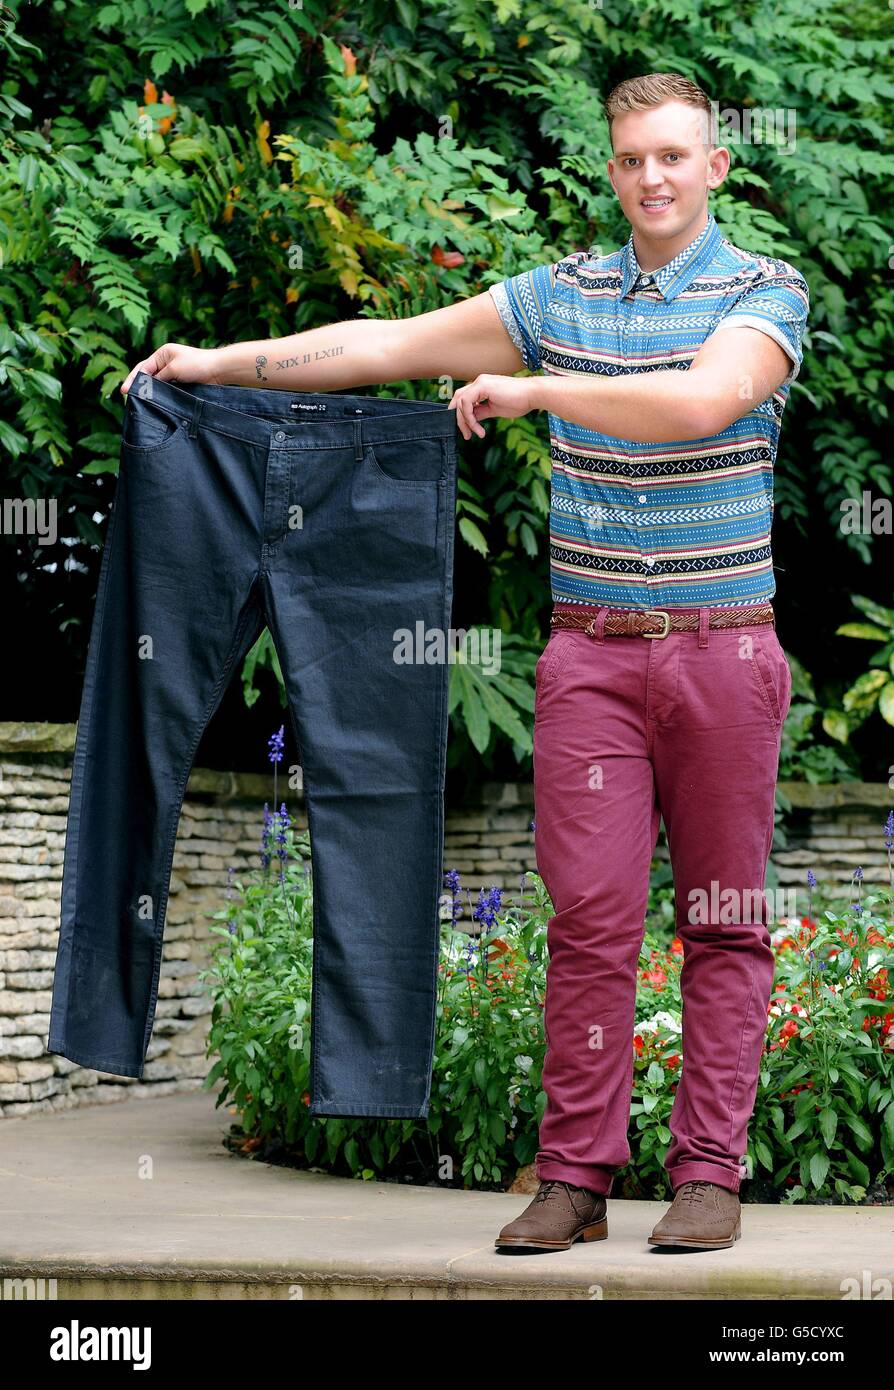 Tom Jones, 18 anni, di Grappenhall, Warrington, che ha vinto lo Slimming World's Young Slimmer of the Year 2012, dopo aver perso 5st 2lbs, tiene un paio dei suoi pantaloni prima della sua perdita di peso. Foto Stock